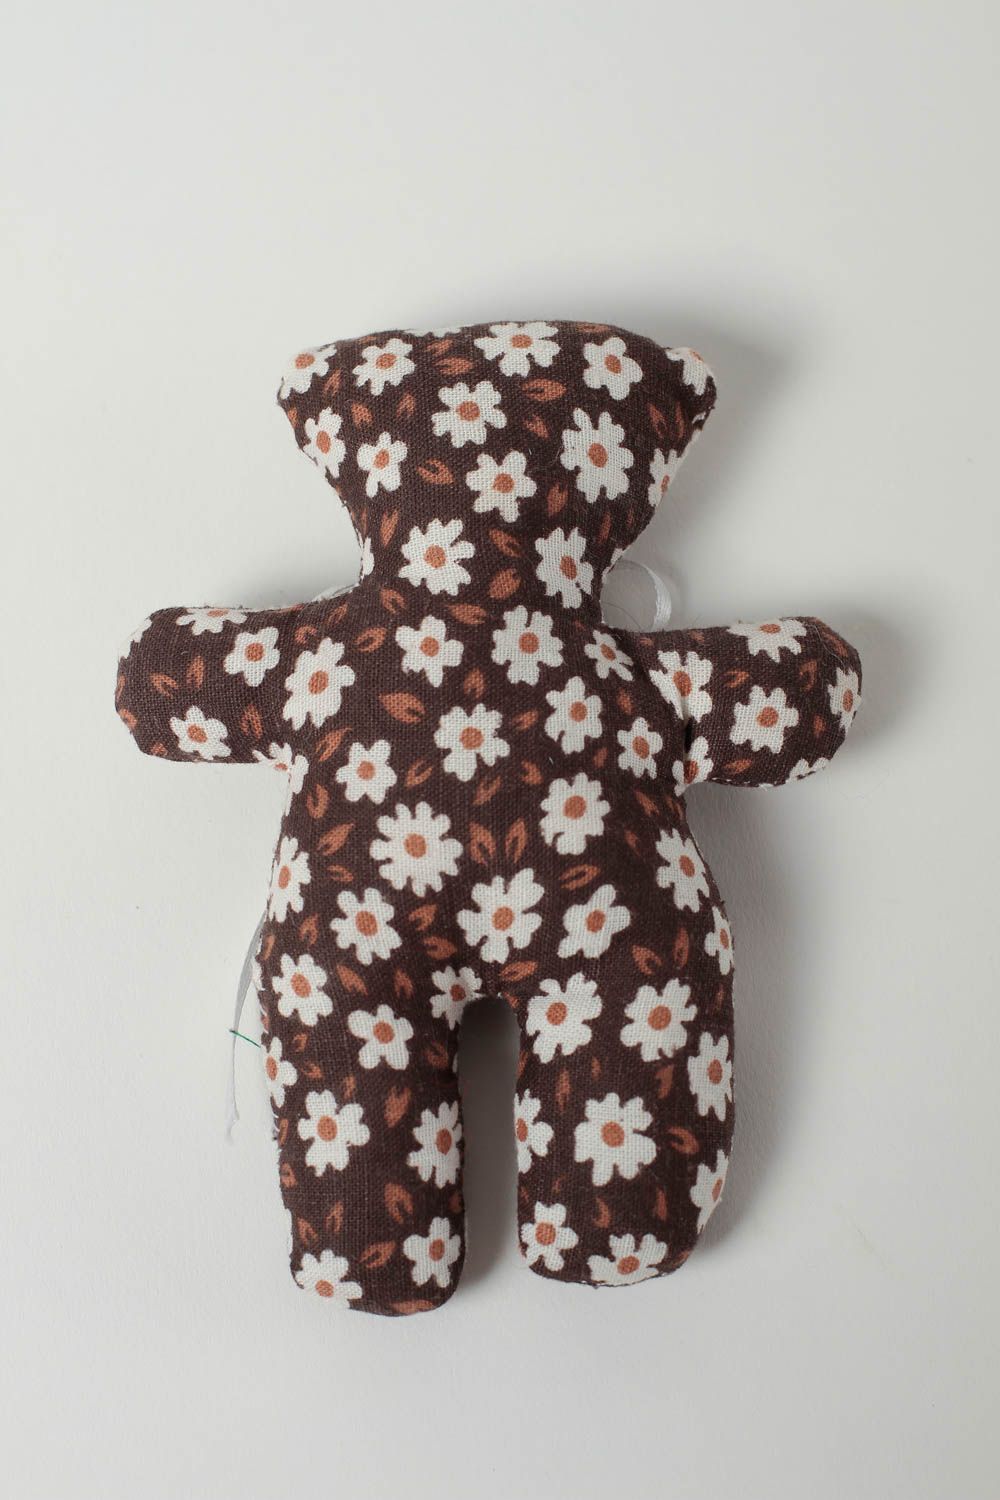 Petite Peluche ours Jouet fait main en tissu à motif floral Cadeau enfant photo 4